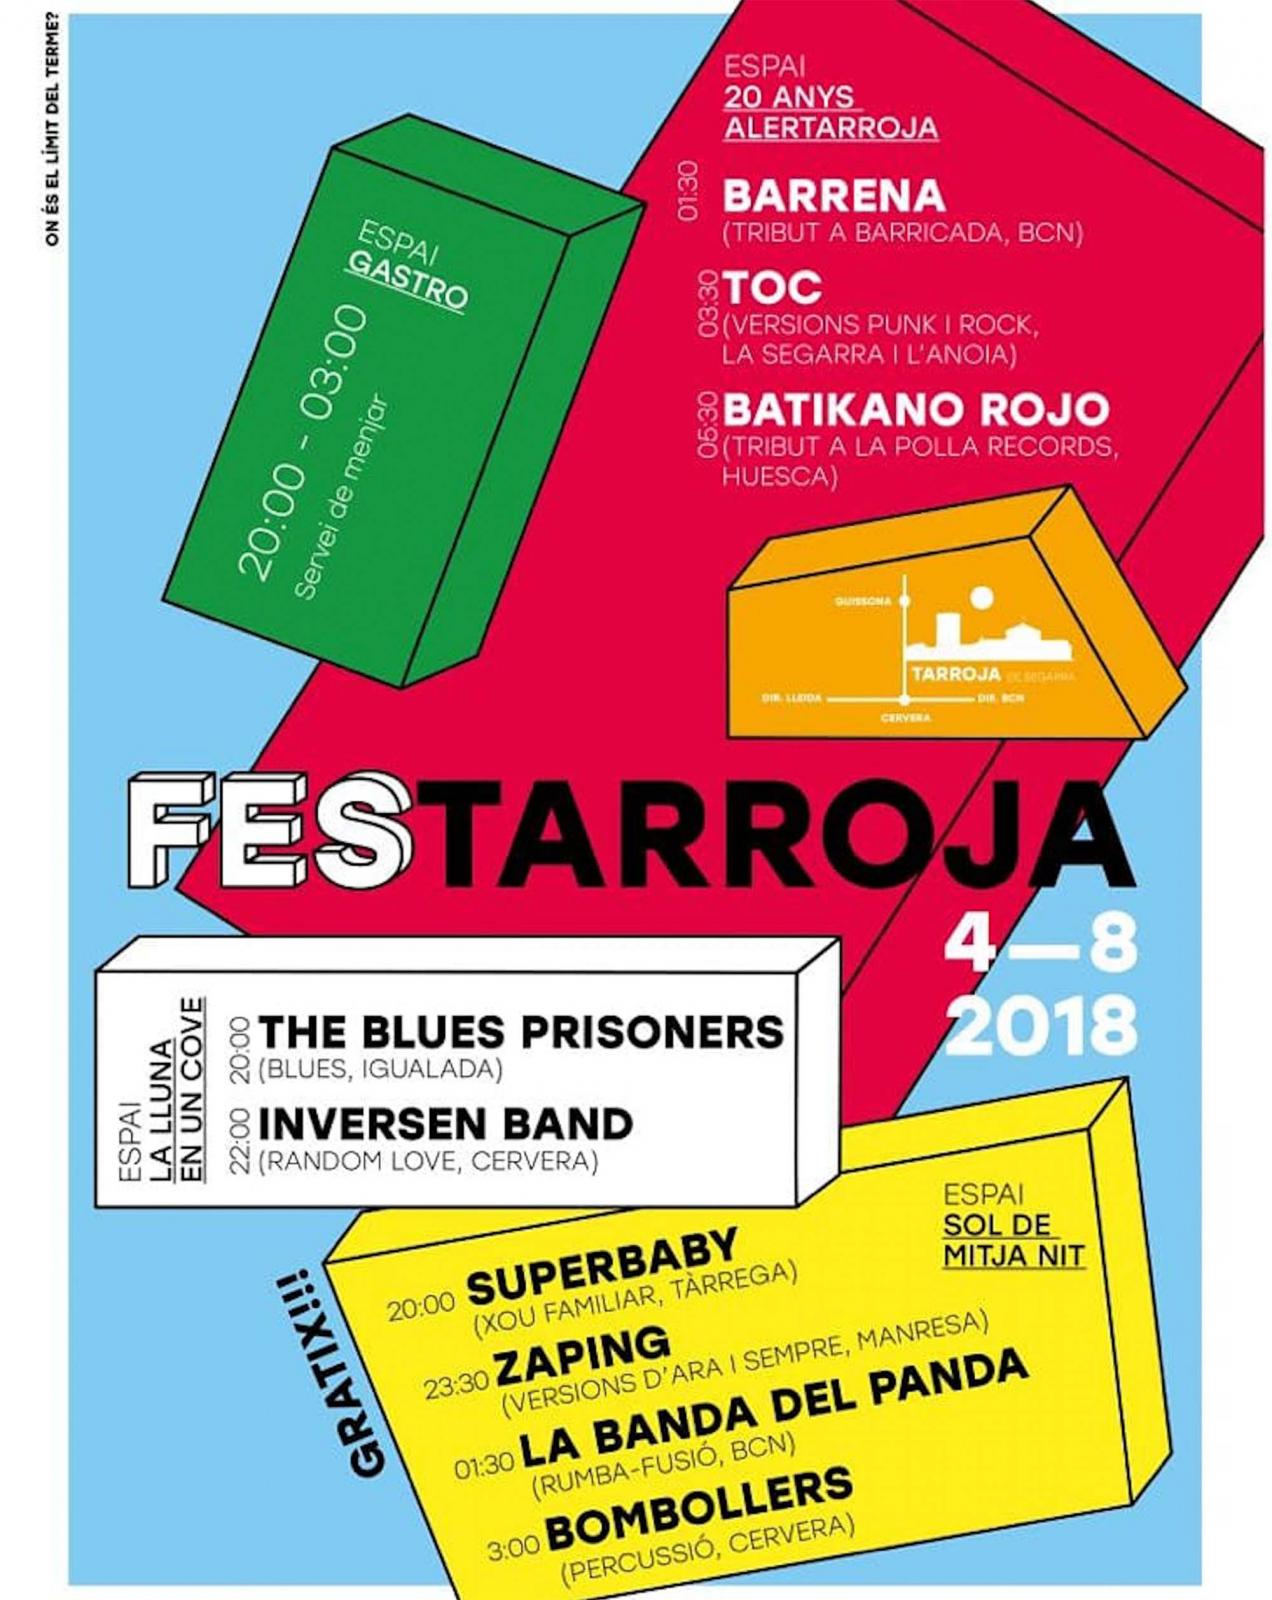 FesTarroja 2018